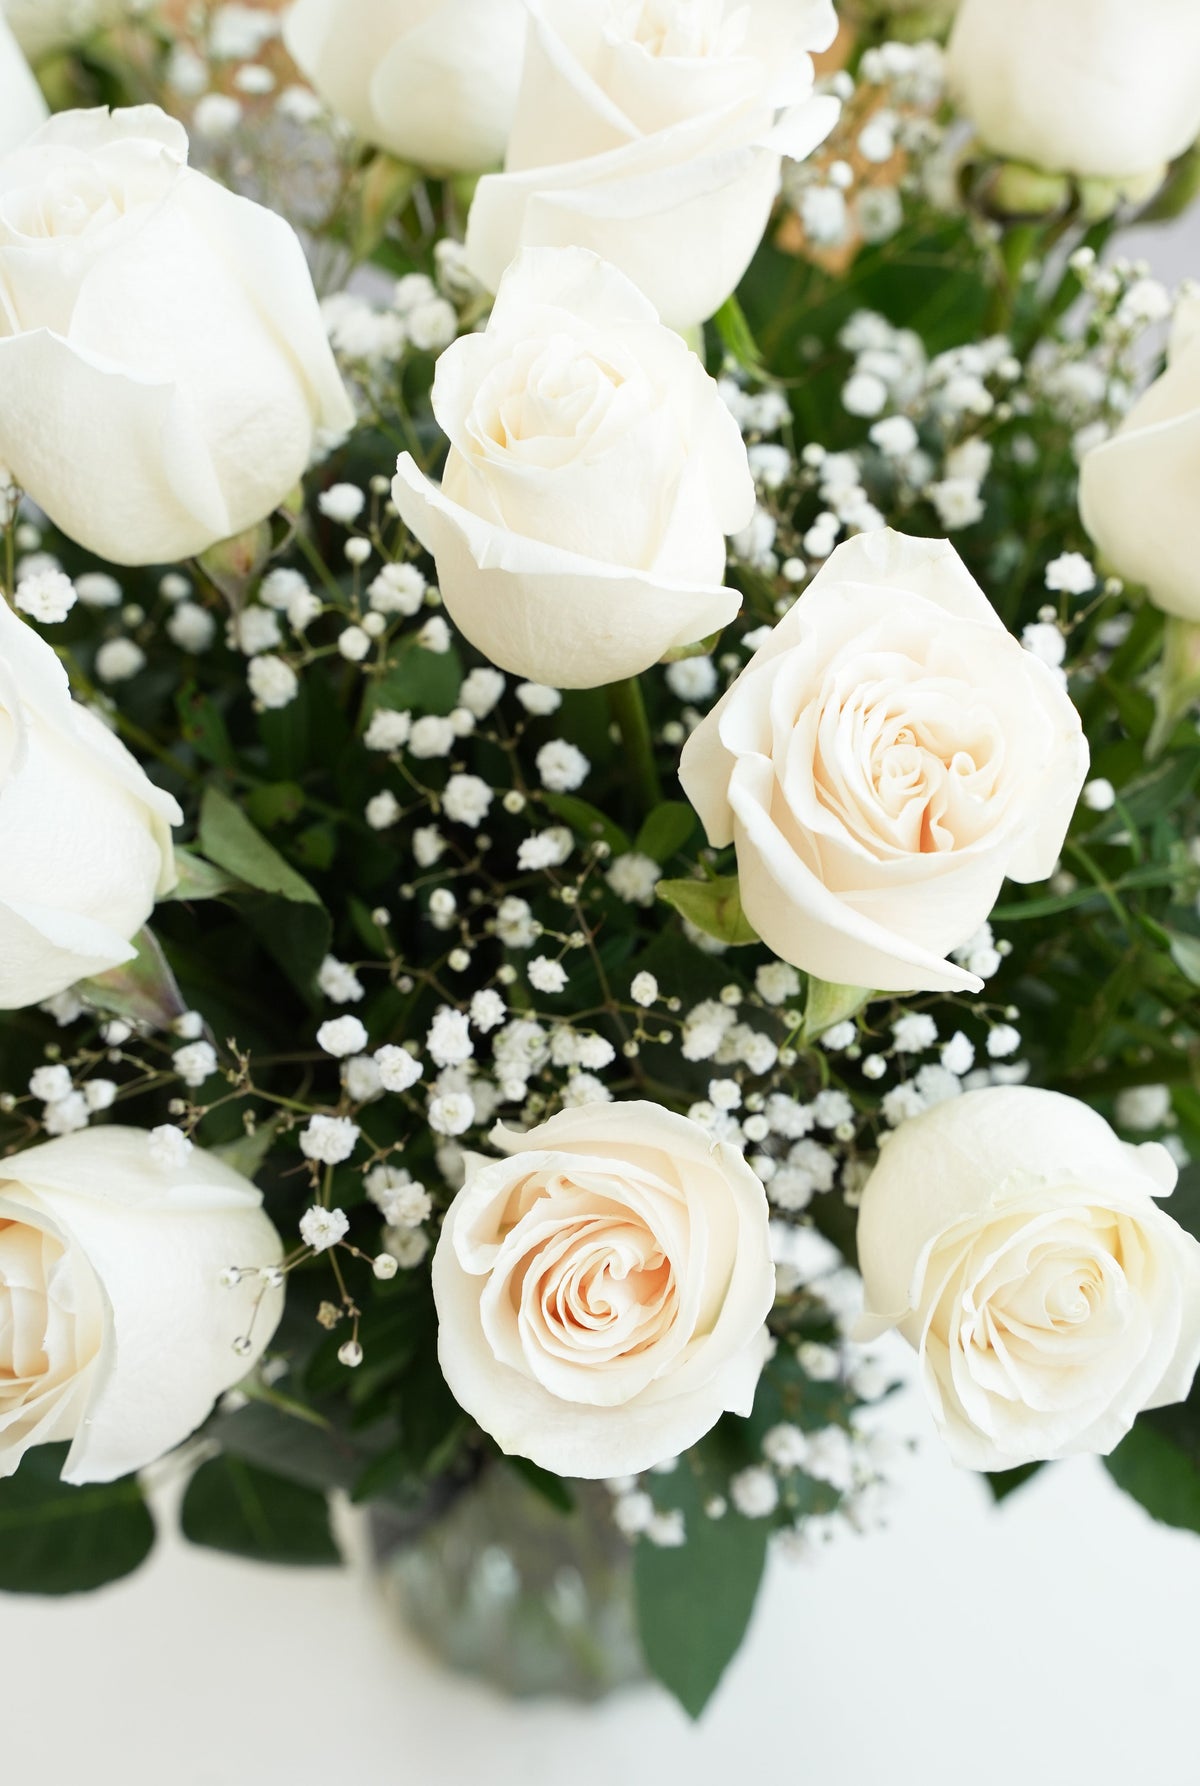 18 Long Stem White Roses in a vase